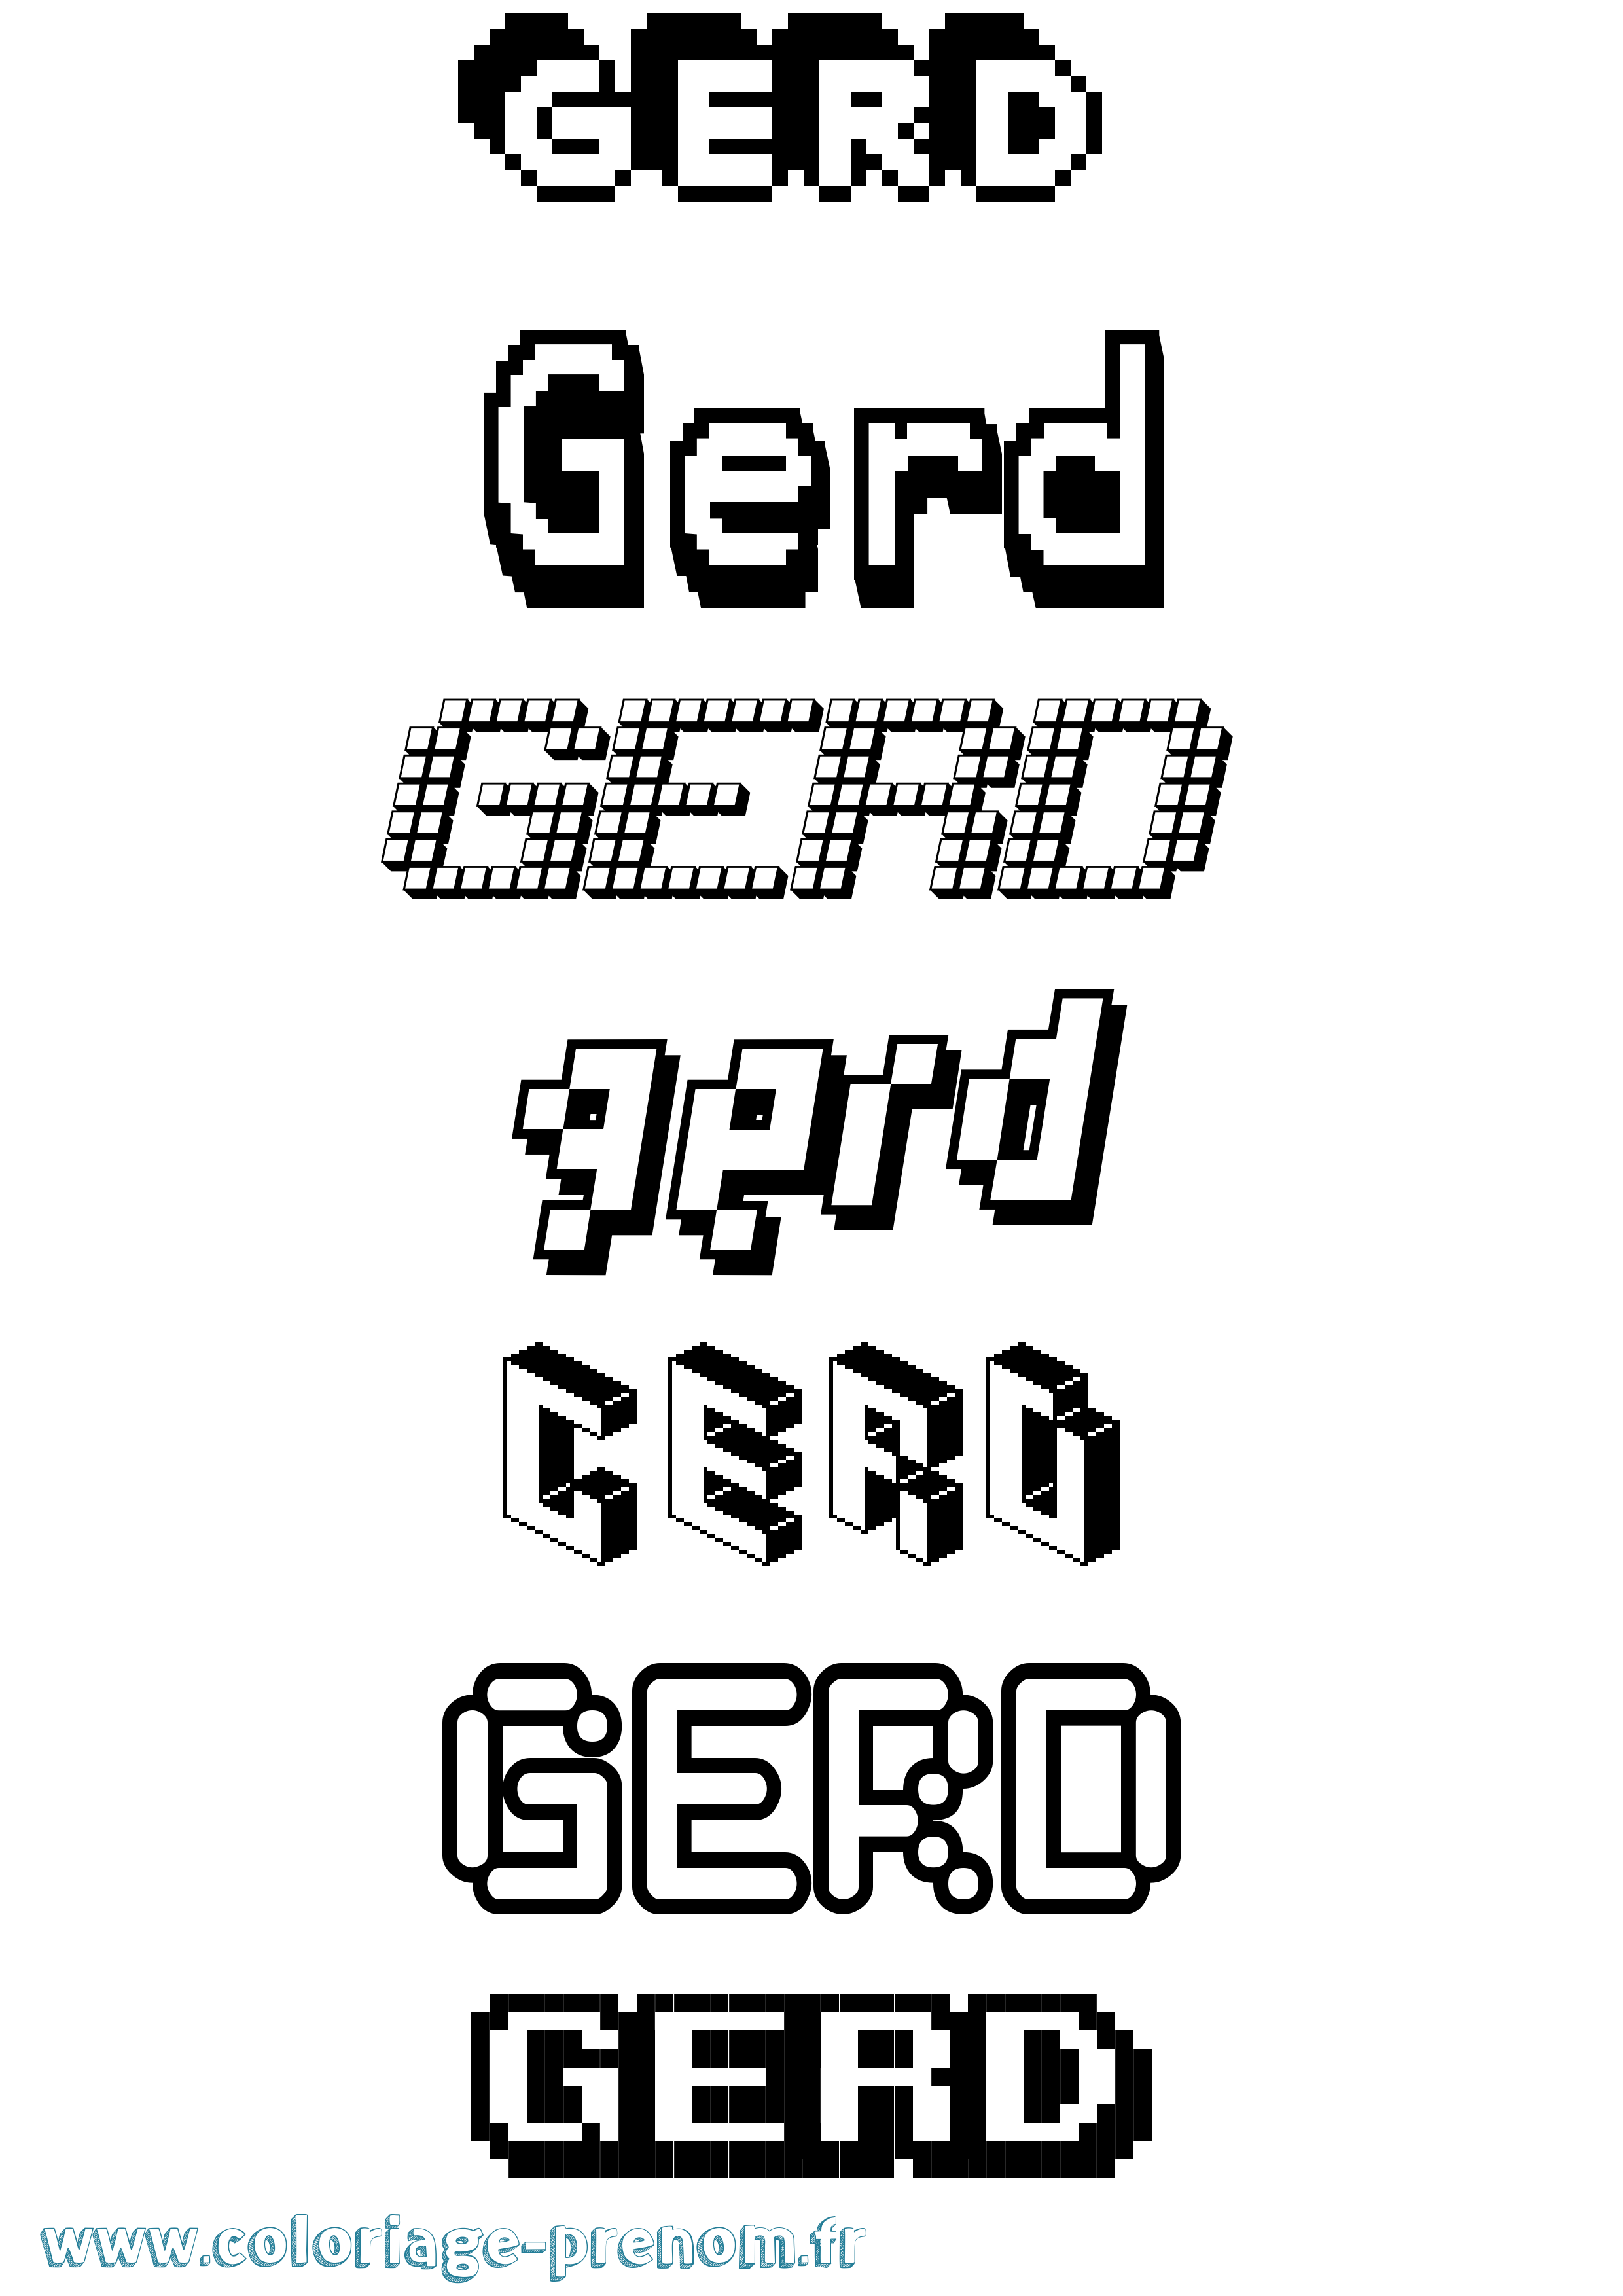 Coloriage prénom Gerd Pixel